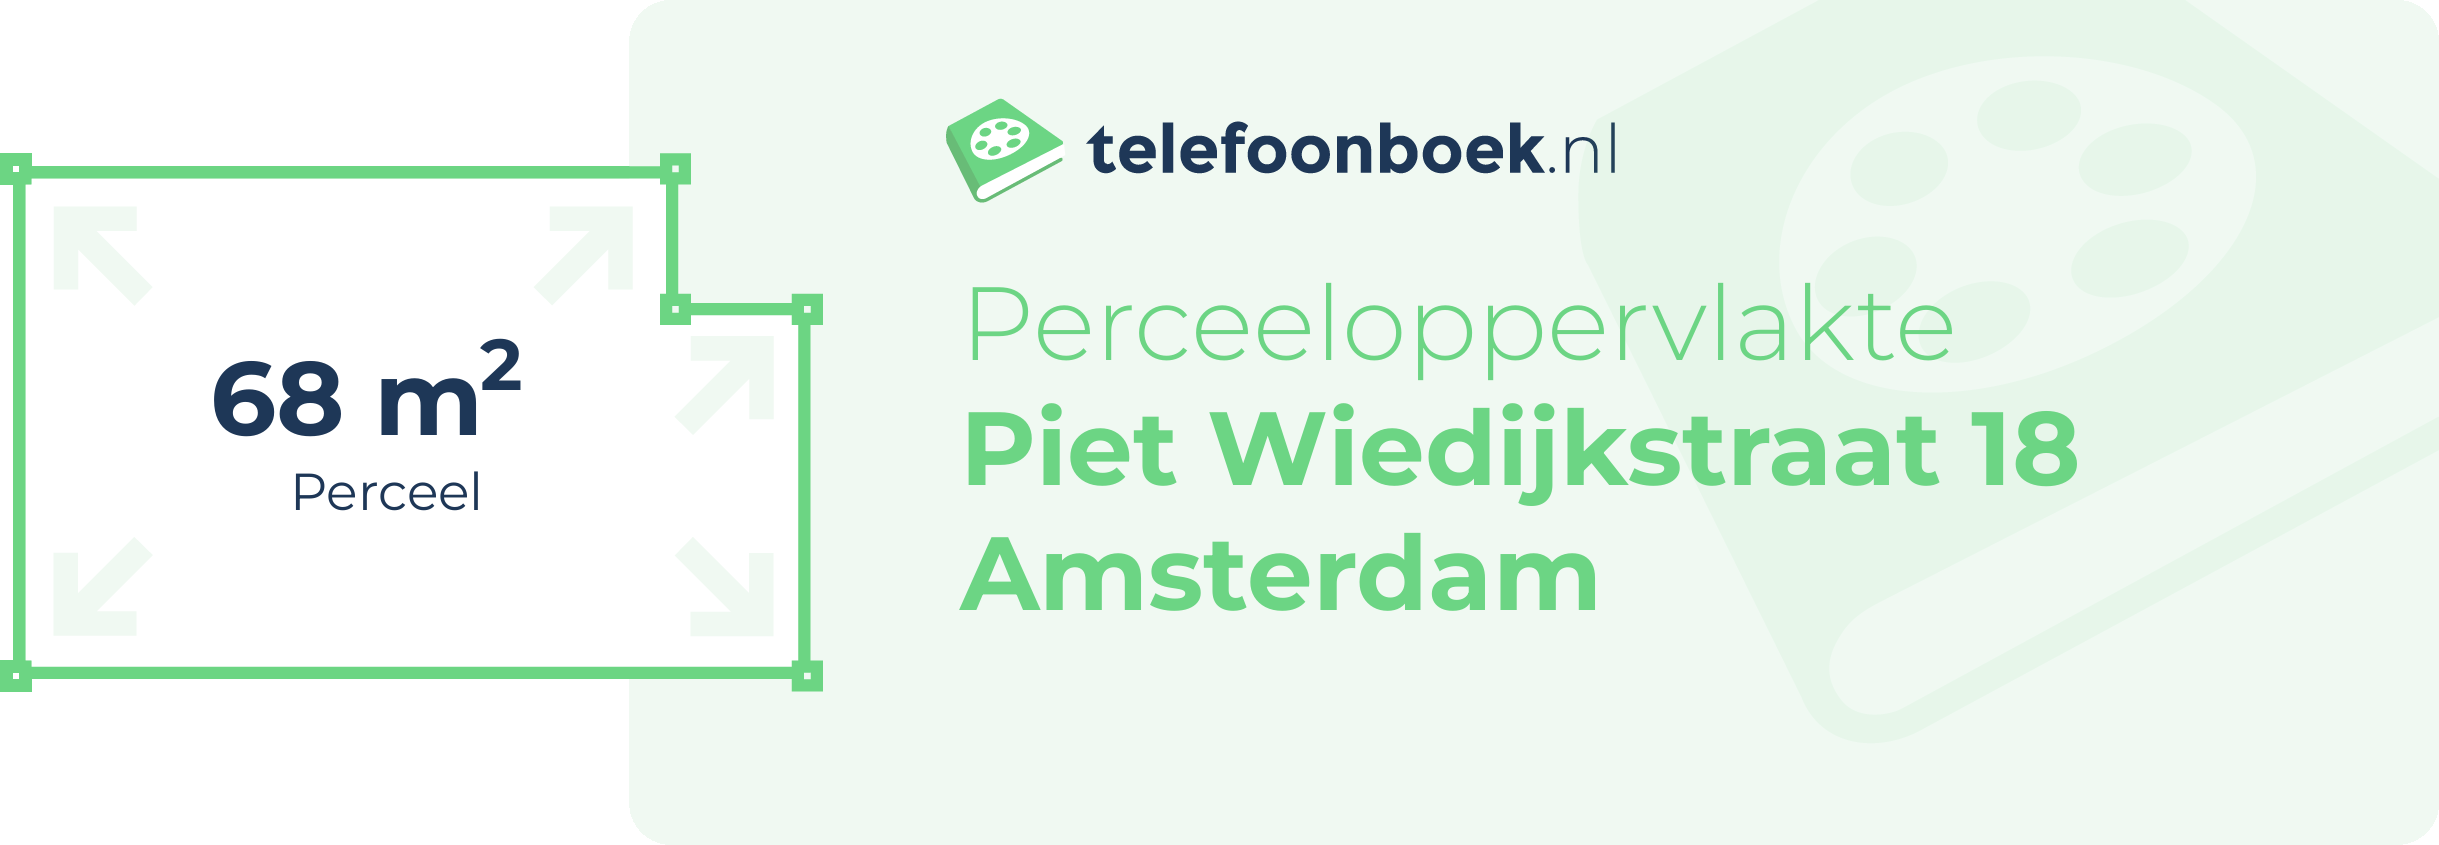 Perceeloppervlakte Piet Wiedijkstraat 18 Amsterdam